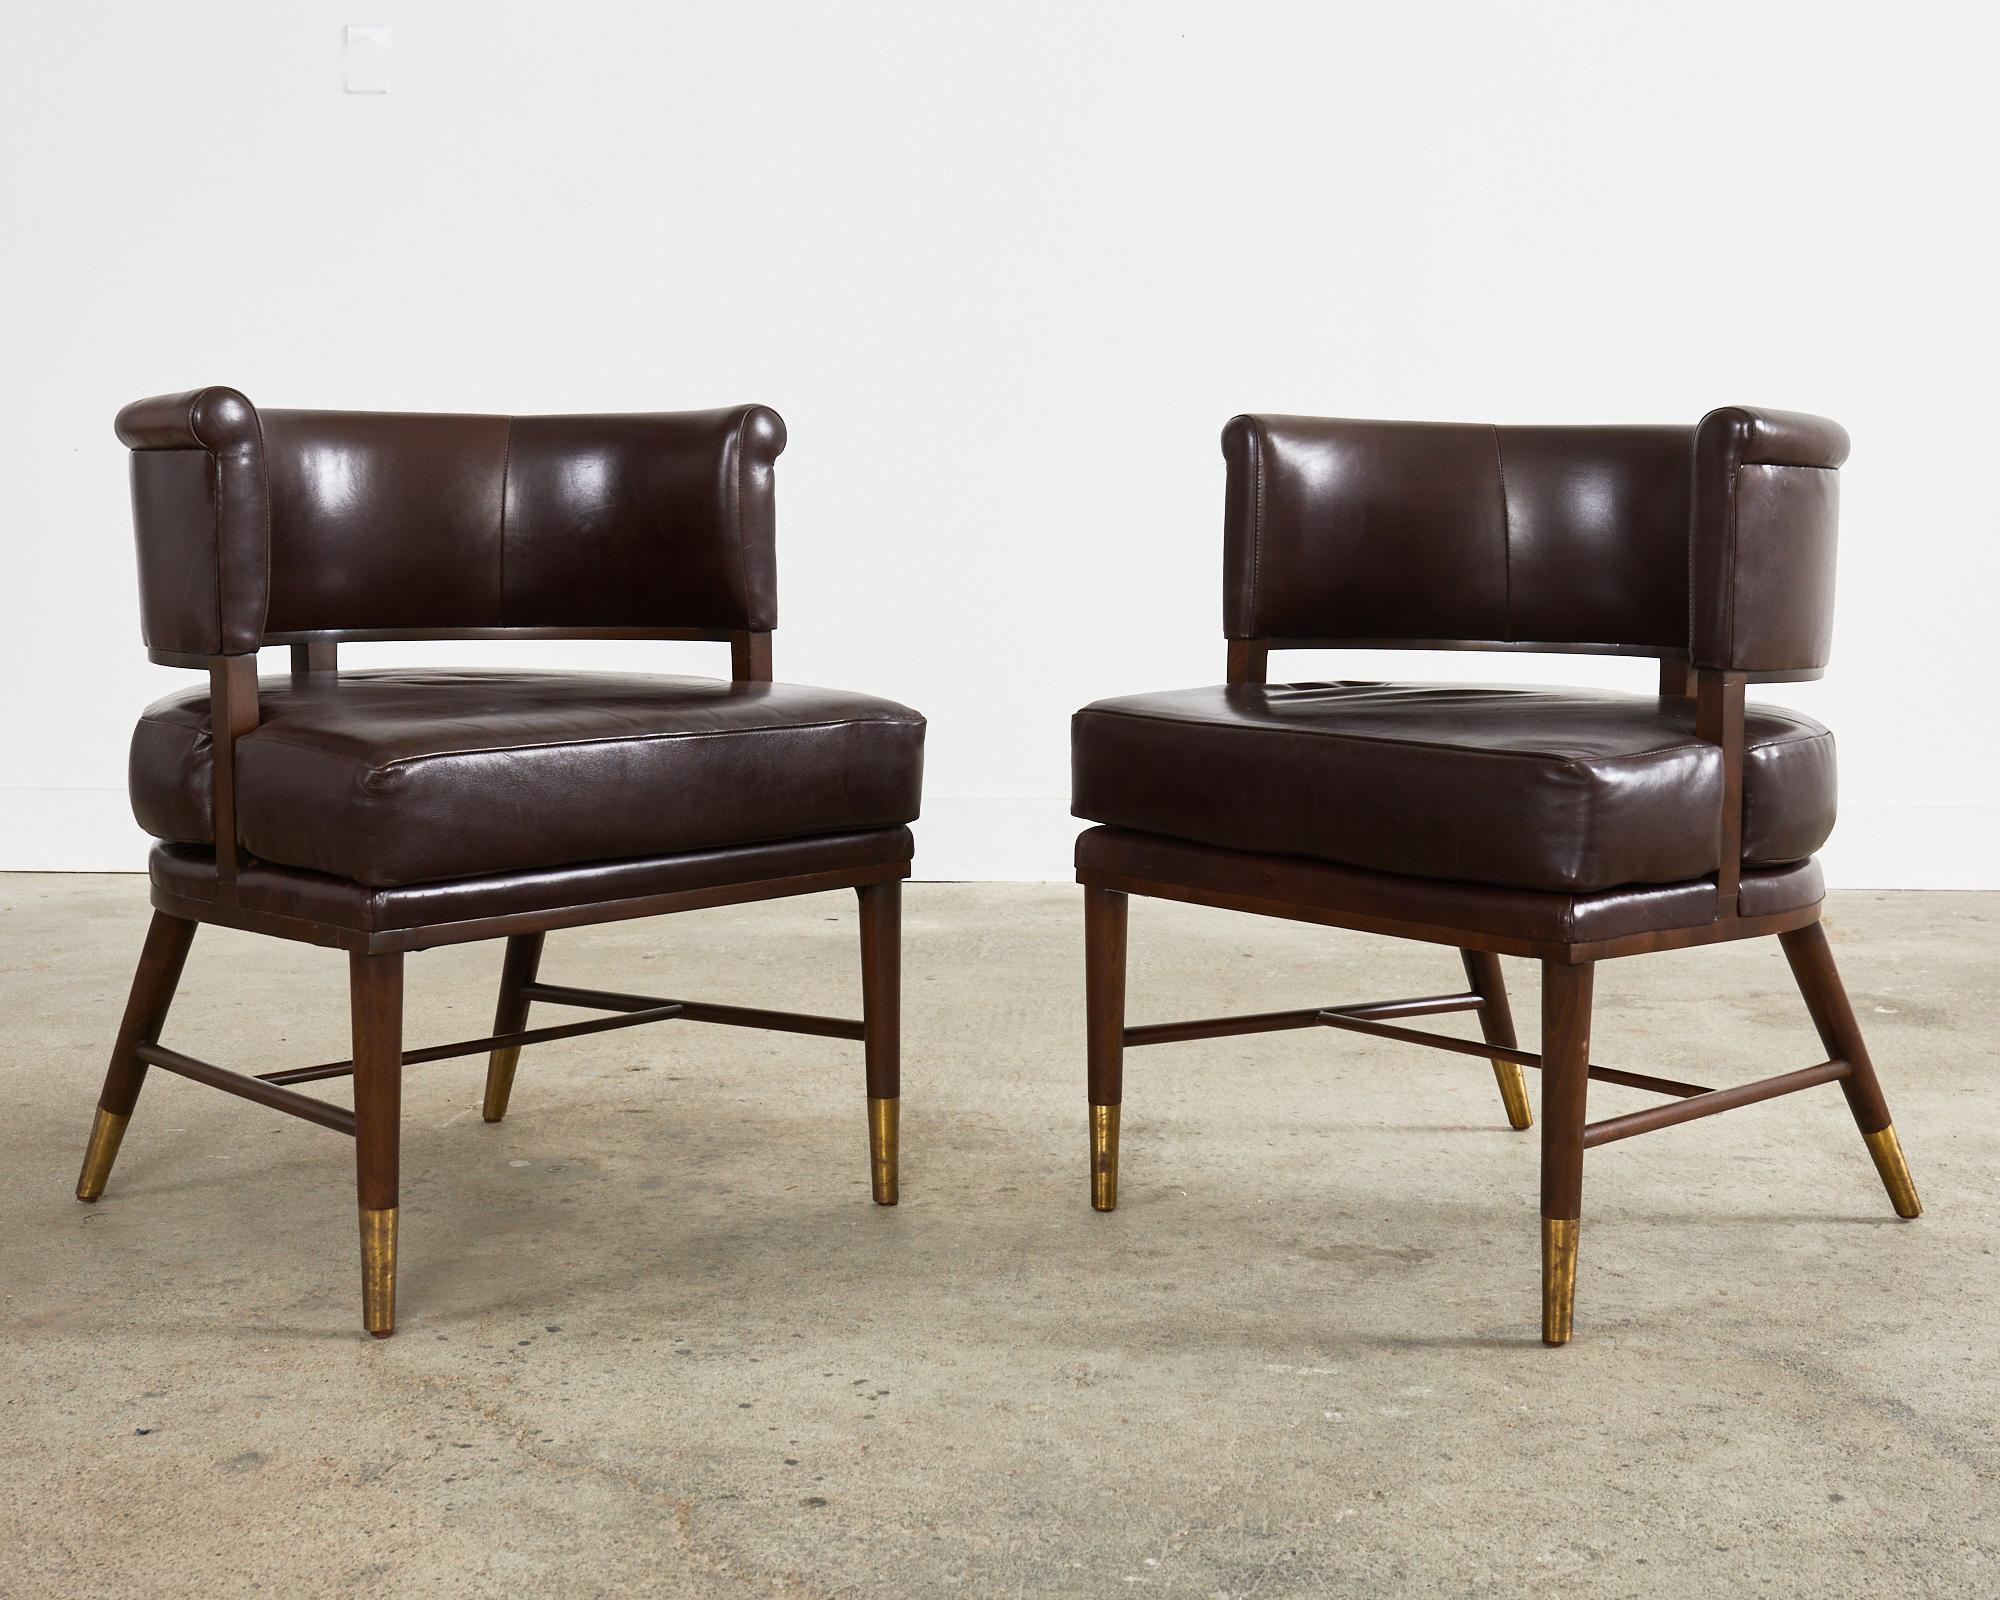 Satz von vier Dunbar Style Leder Barrel Back Lounge Chairs (amerikanisch)